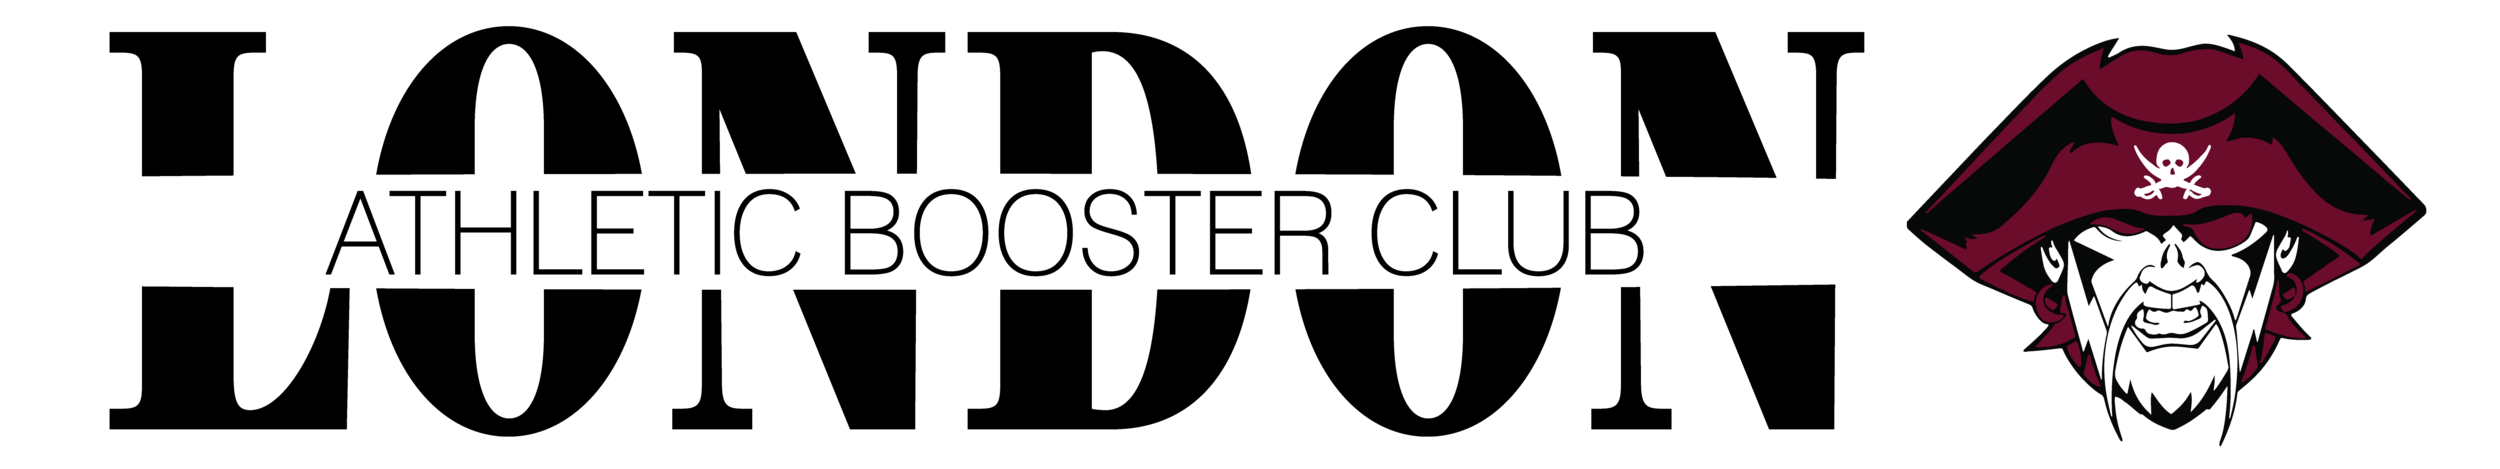 LABC logo-06.png